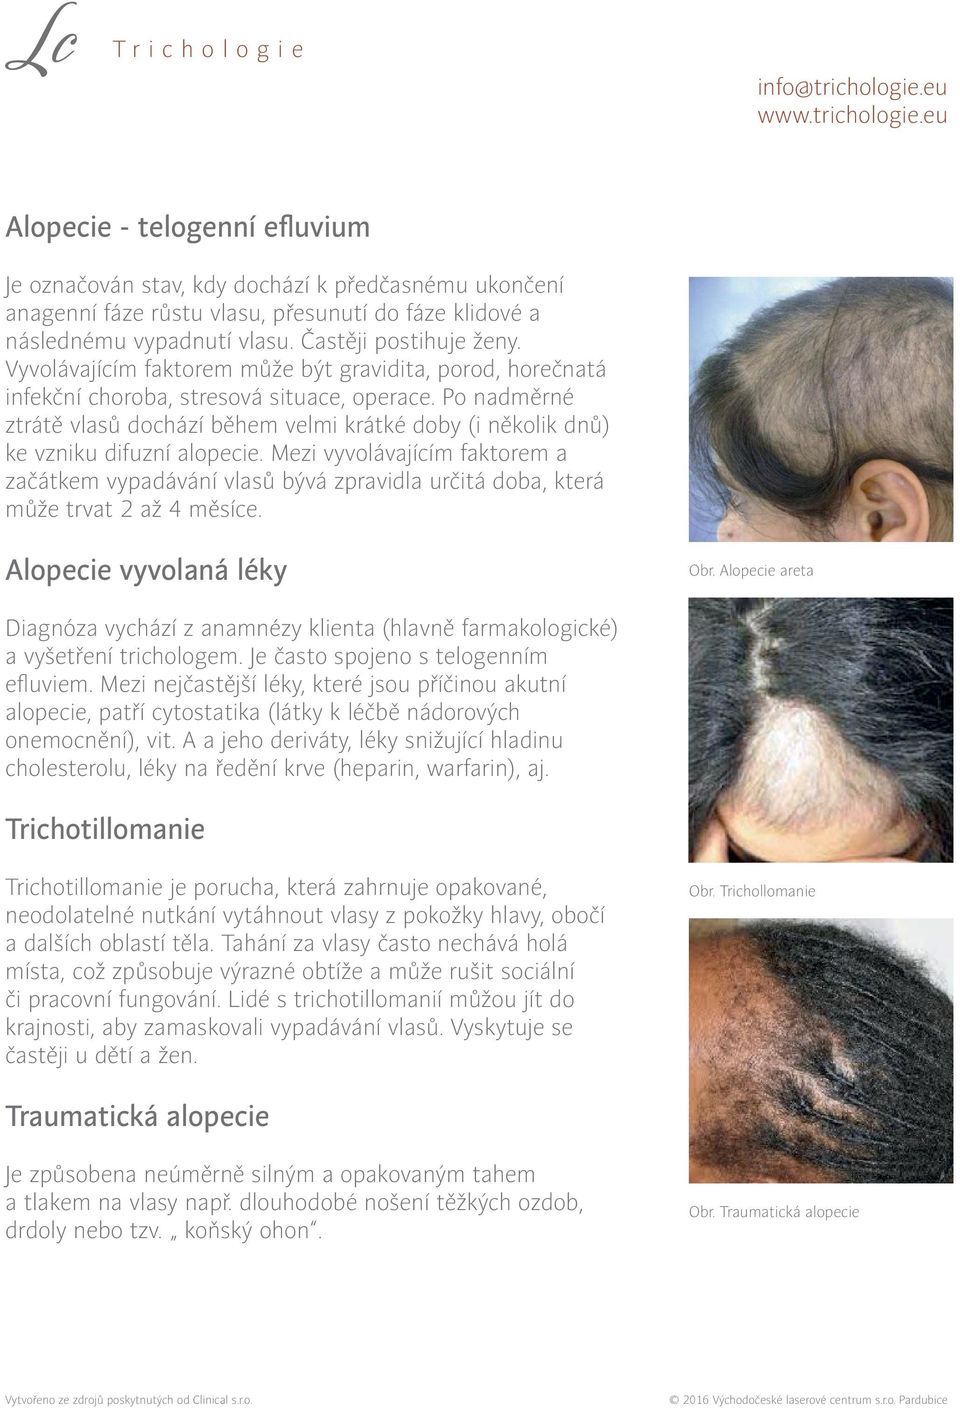 Po nadměrné ztrátě vlasů dochází během velmi krátké doby (i několik dnů) ke vzniku difuzní alopecie.